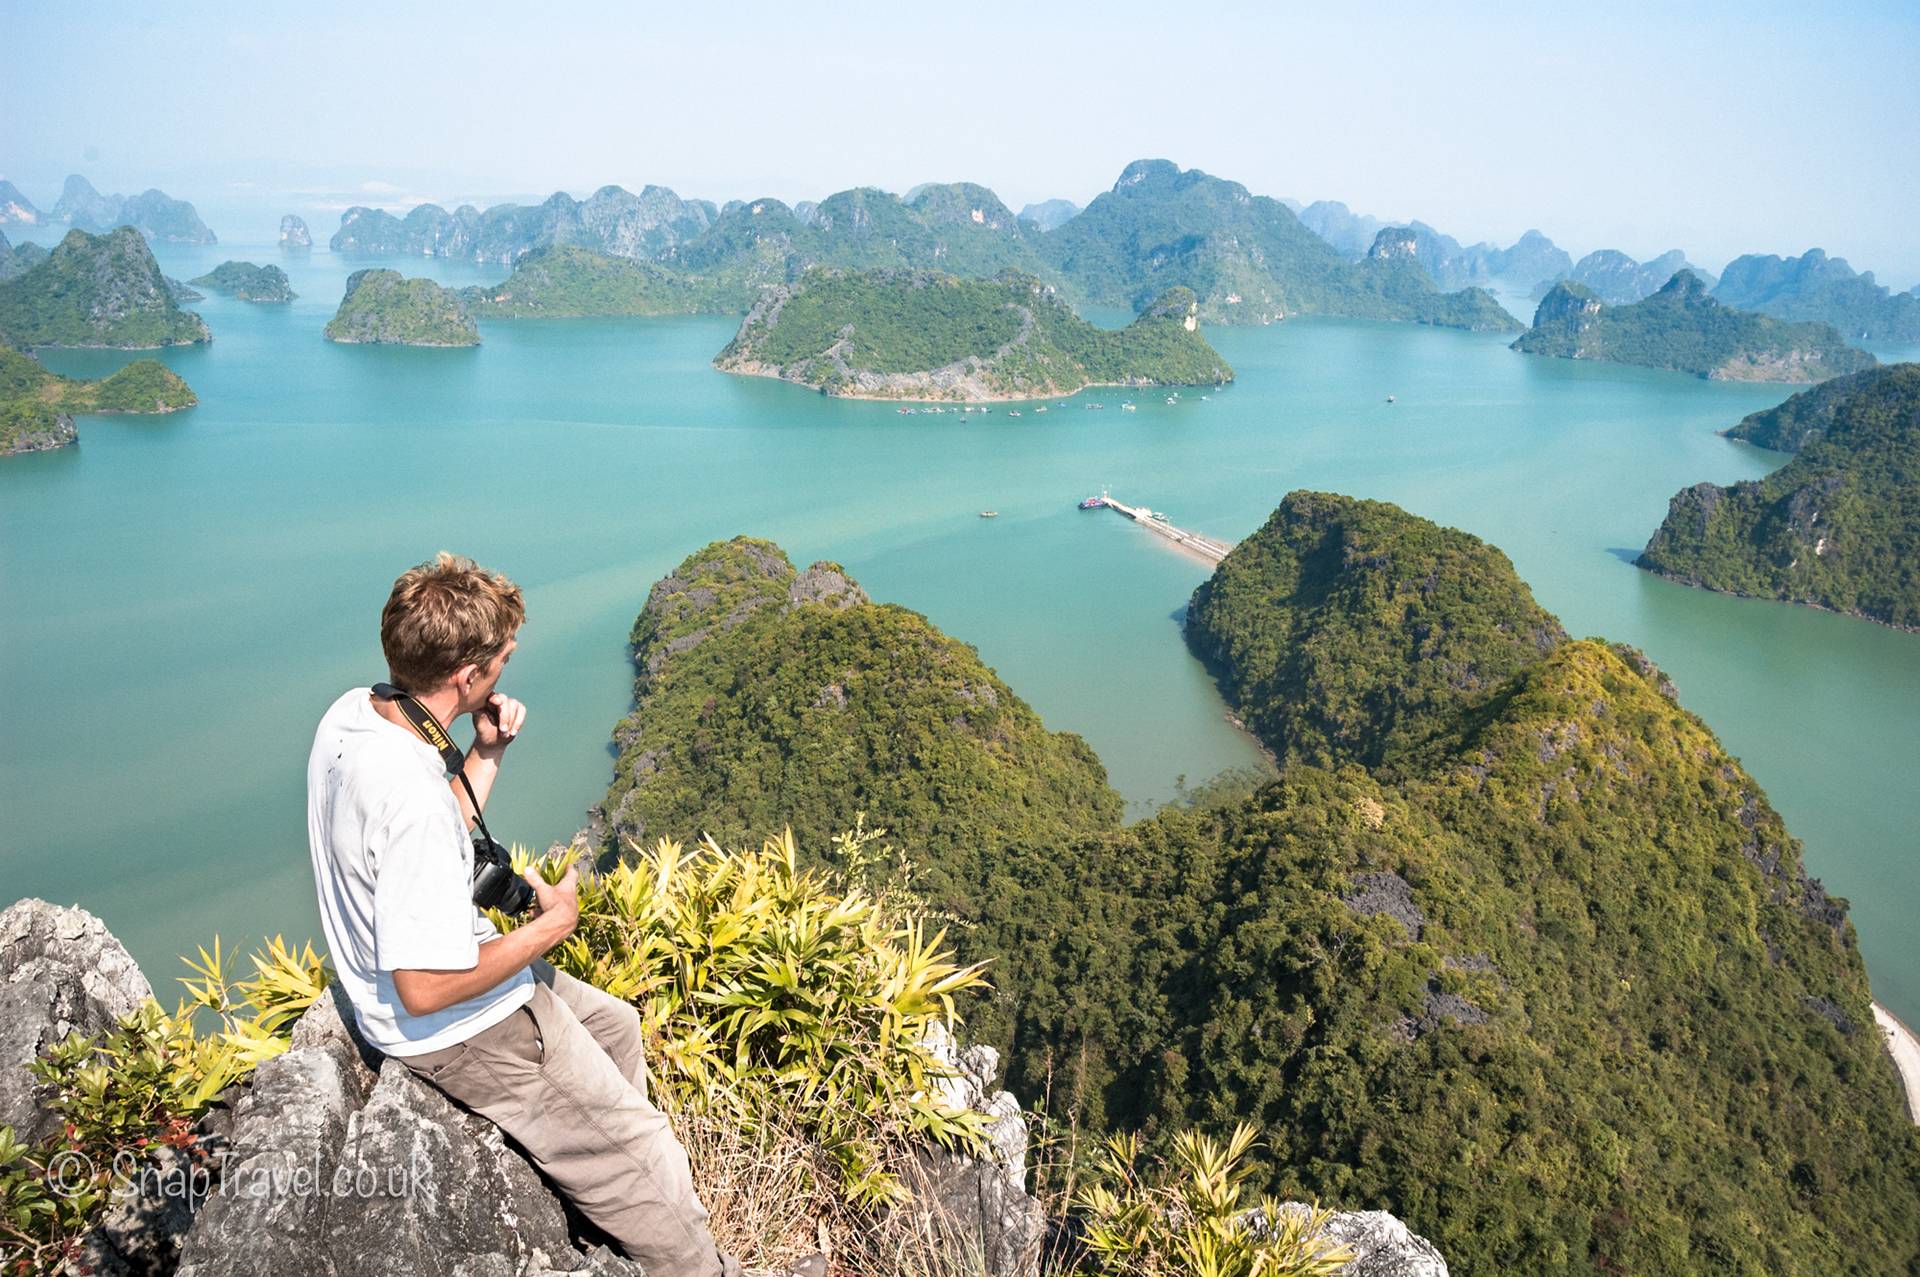 17 фактов, что нужно знать туристу для поездки во вьетнам: как себя вести, что запрещено и что разрешено